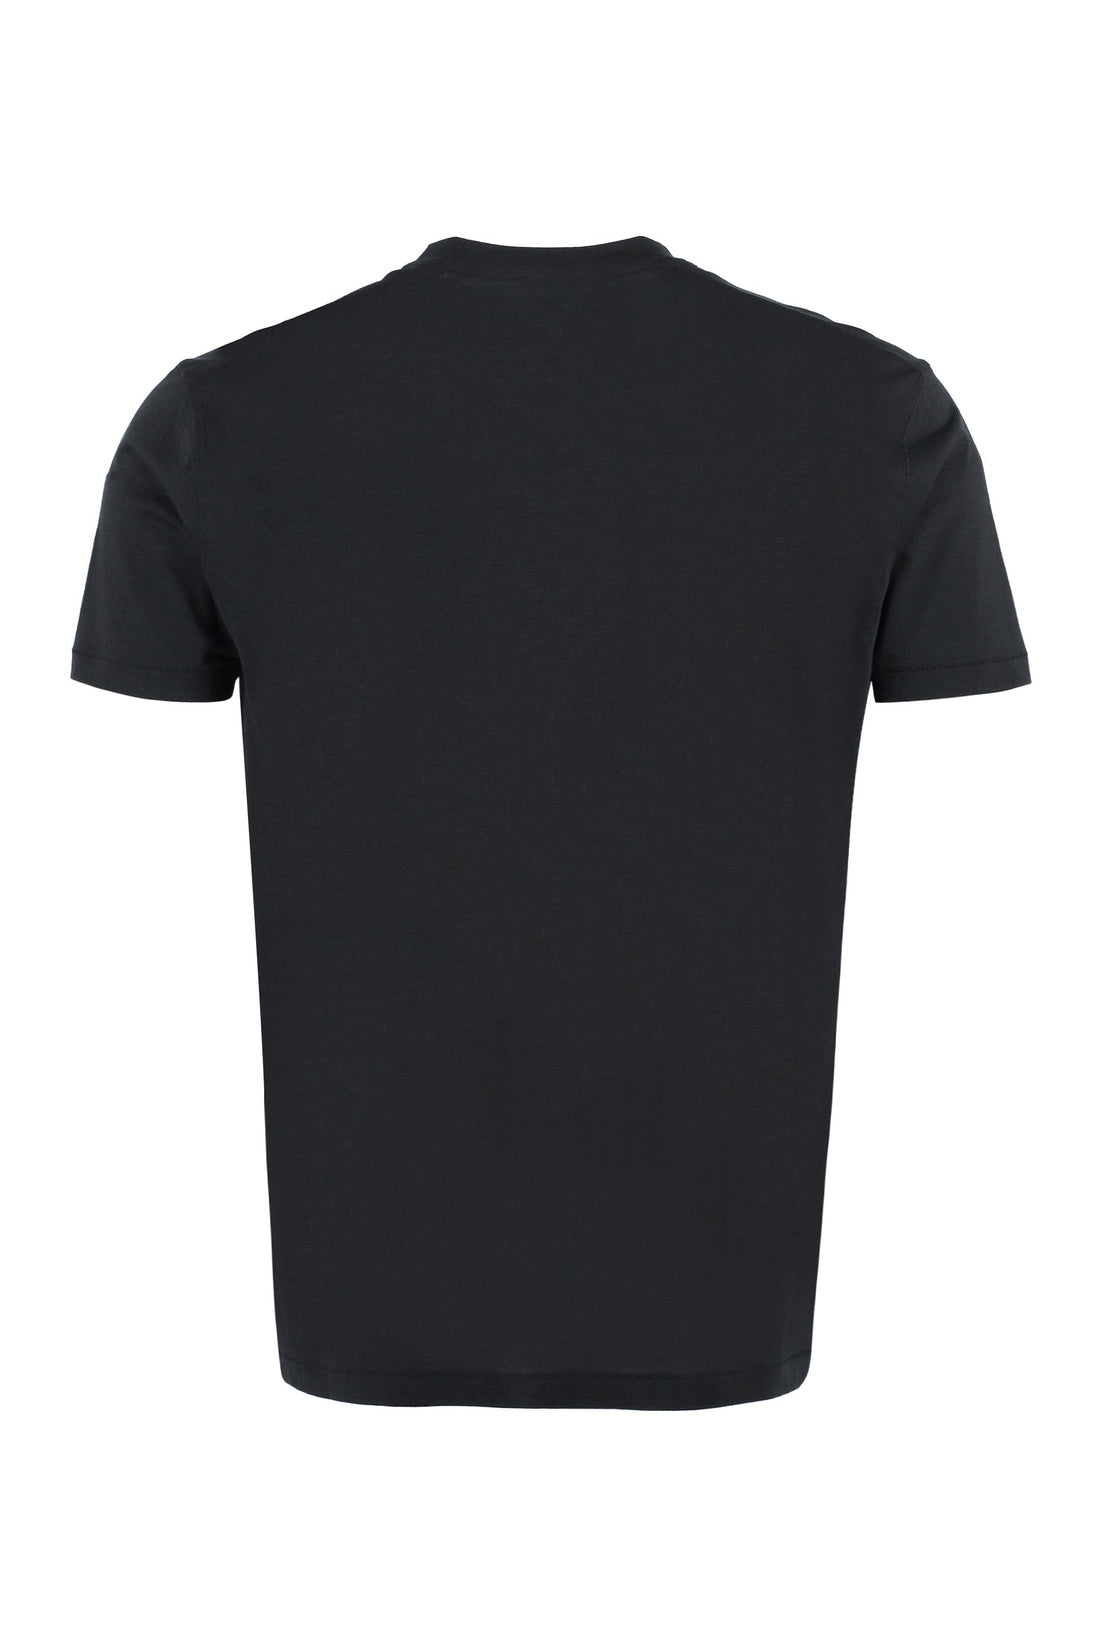 Tom Ford-OUTLET-SALE-Cotton crew-neck T-shirt-ARCHIVIST